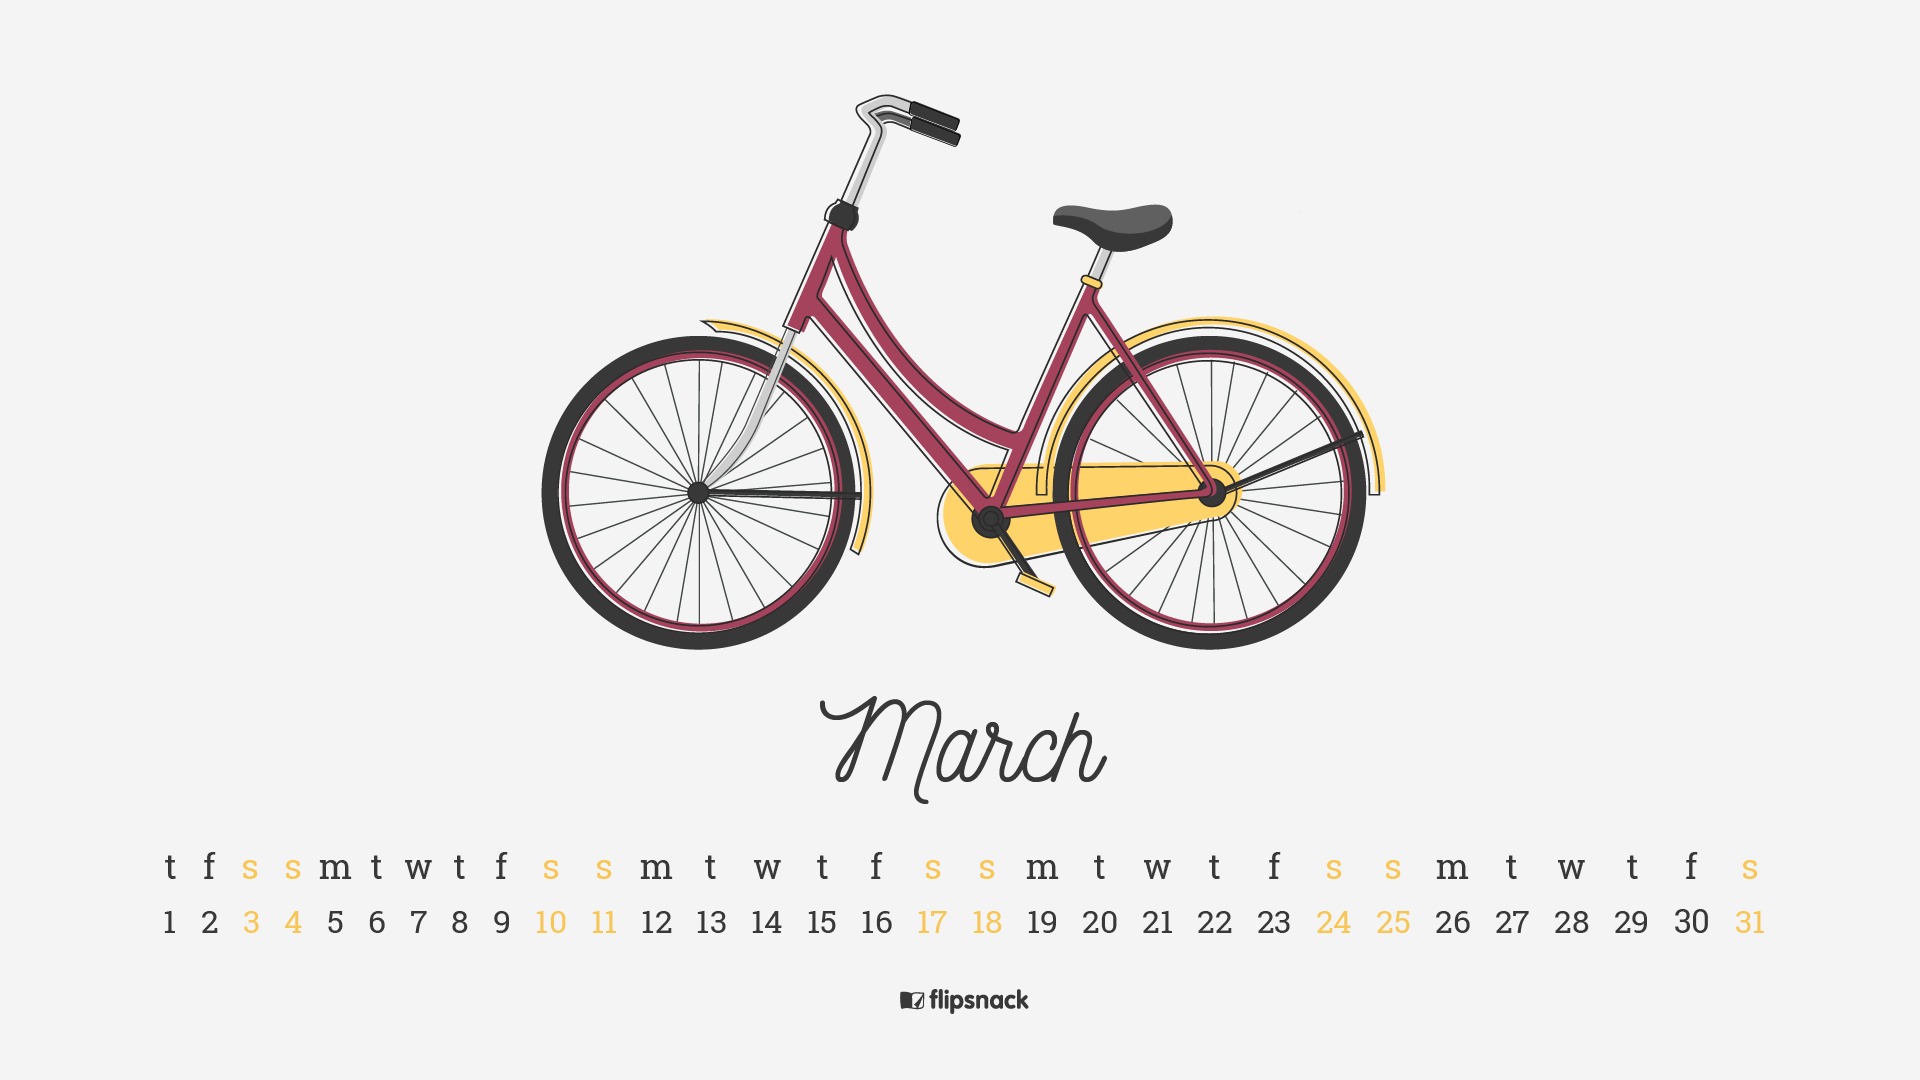 March 2019 Desktop Calendar Wallpaper